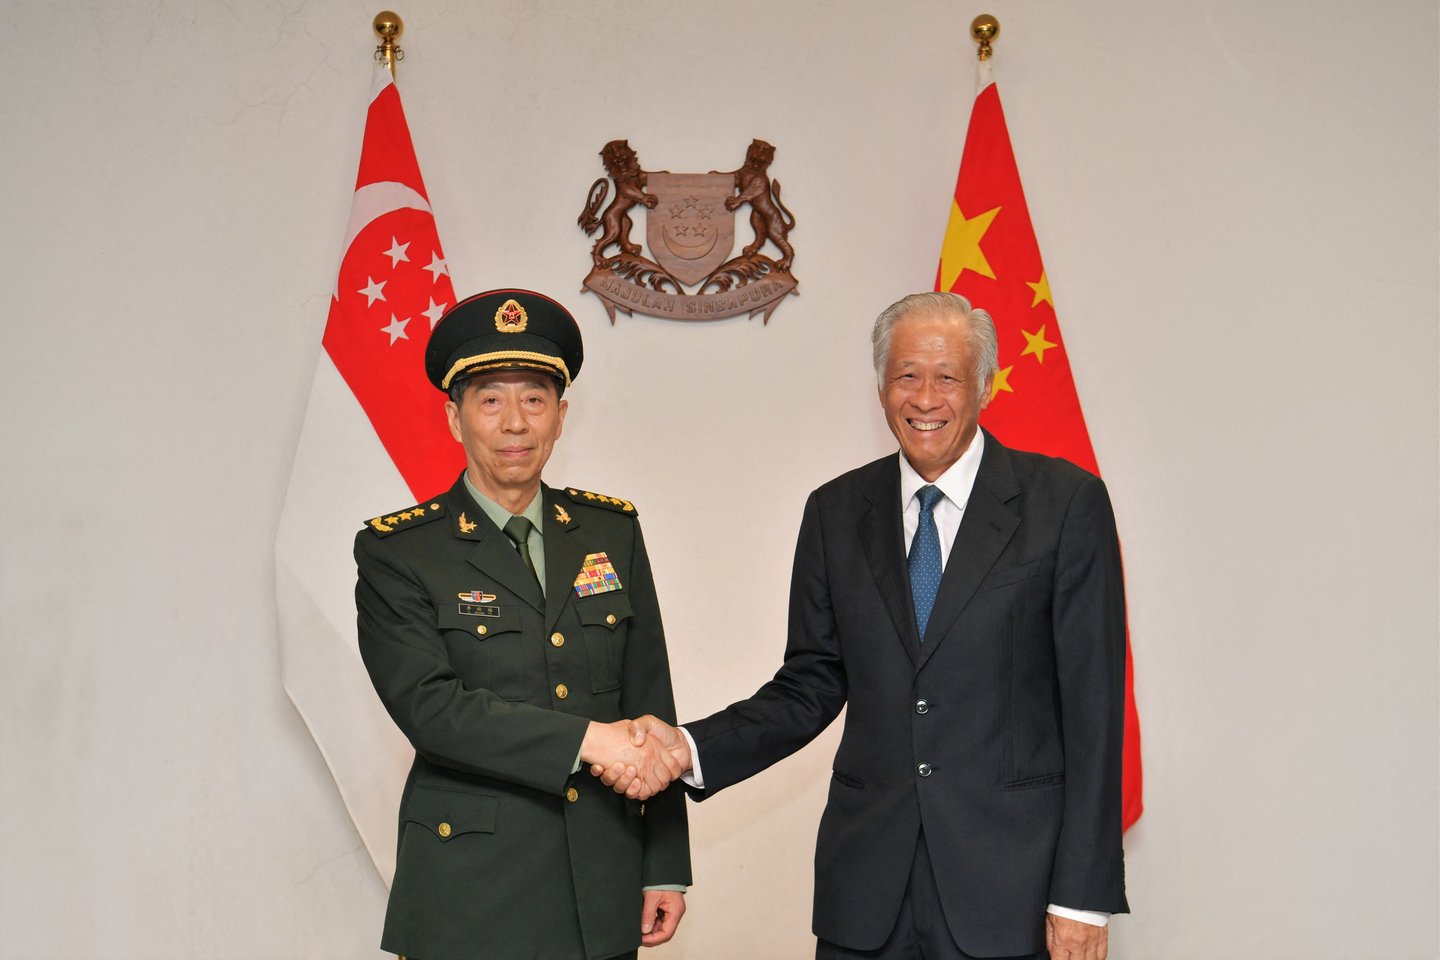 ​Naujasis Kinijos gynybos ministras Li Shangfu pagrasino užkariauti Taivaną. Prieš Singapūre prasidedant Azijos saugumo konferencijai „Shangri-la dialogas“, generolas Li Shangfu susitikime su kolega iš Singapūro Ng Eng Henu pareiškė, jog Kinija nori taikaus „susivienijimo“, tačiau neleis, kad Taipėjue valdanti Pažangos partija (DPP) siektų nepriklausomybės.<br>Reuters/Scanpix nuotr.